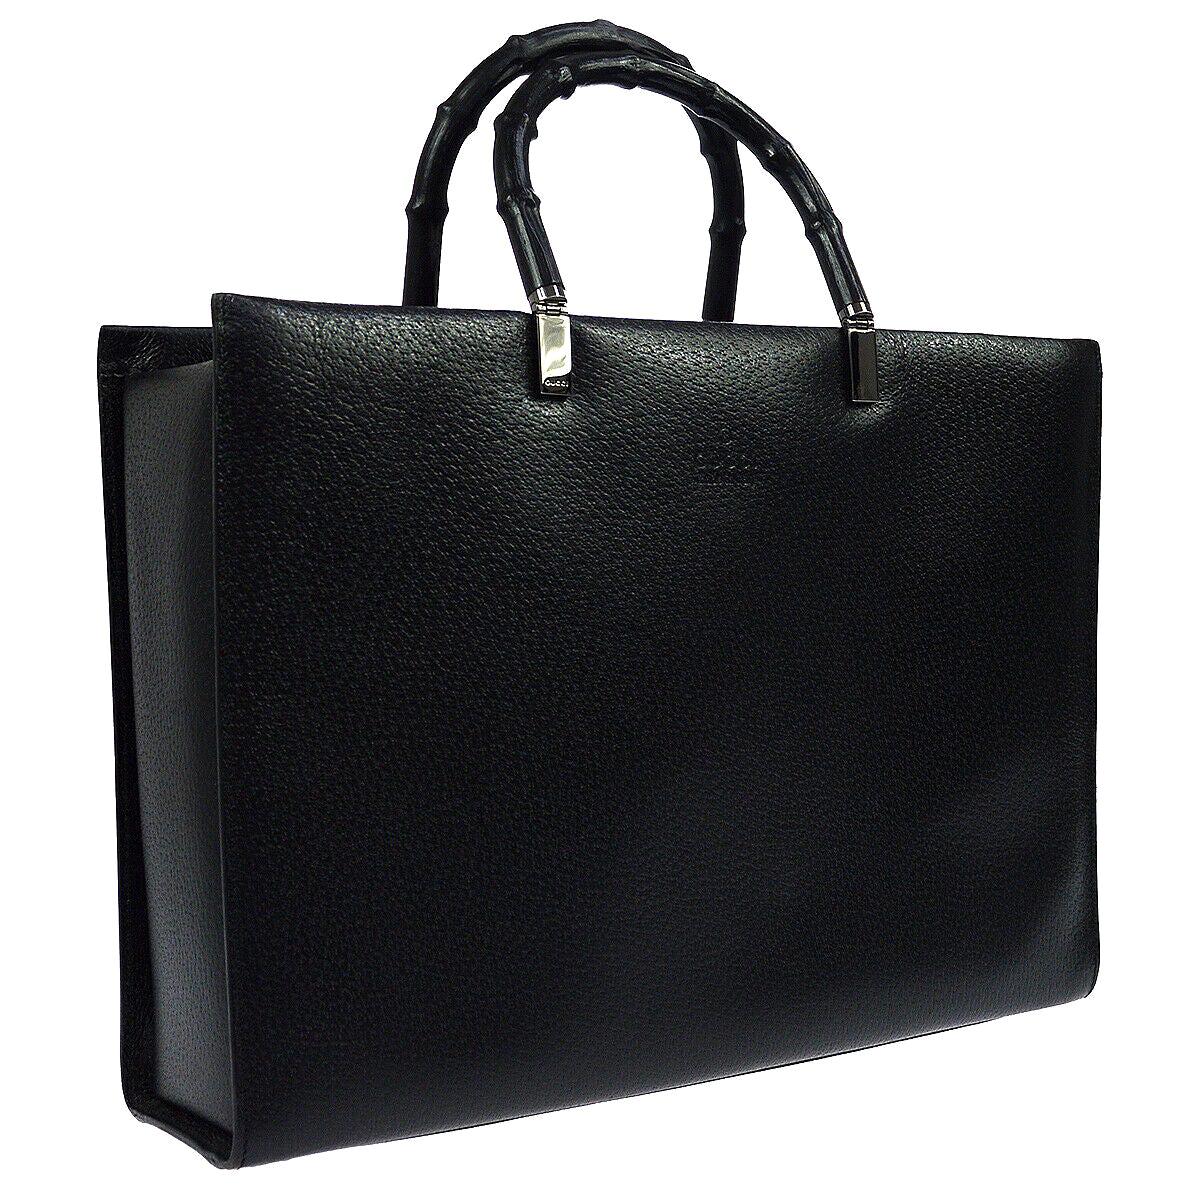 Gucci Black Leather Bamboo Large Top Handle Shopper CarryallShoulder Tote Bag 